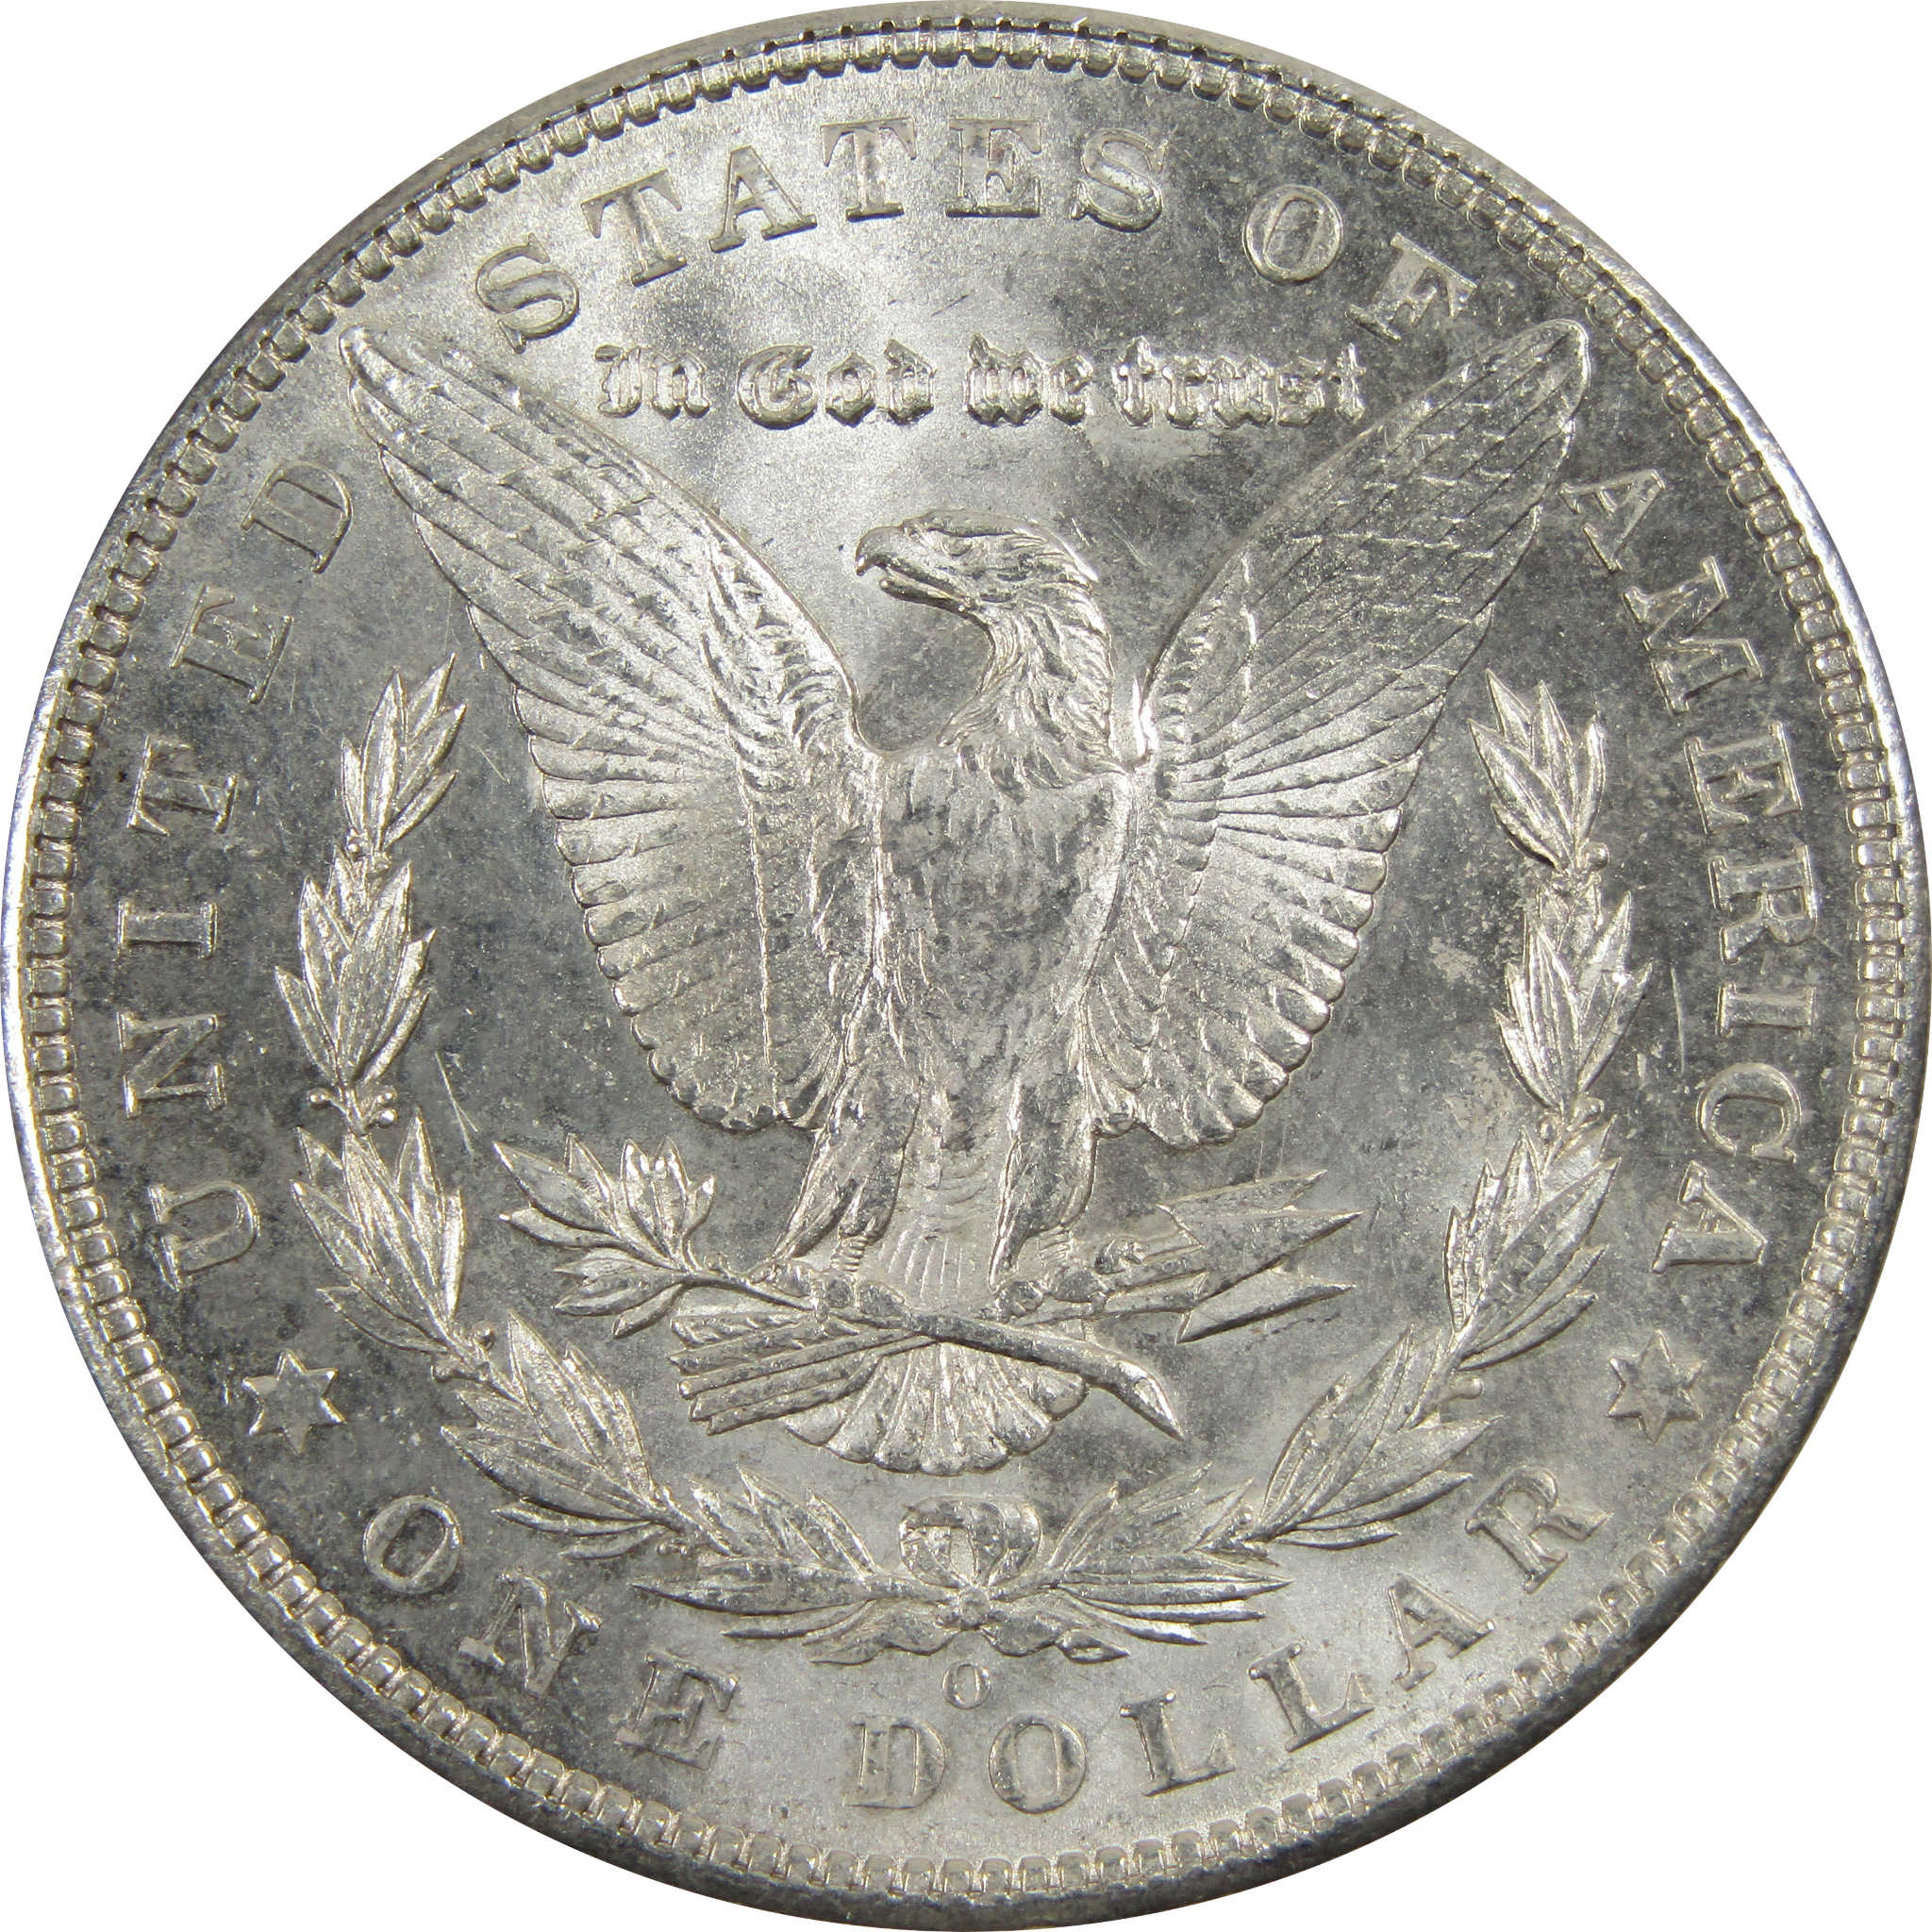 1903 O Morgan Dollar BU Choice Uncirculated 90% Silver $1 SKU:I7911 - Morgan coin - Morgan silver dollar - Morgan silver dollar for sale - Profile Coins &amp; Collectibles